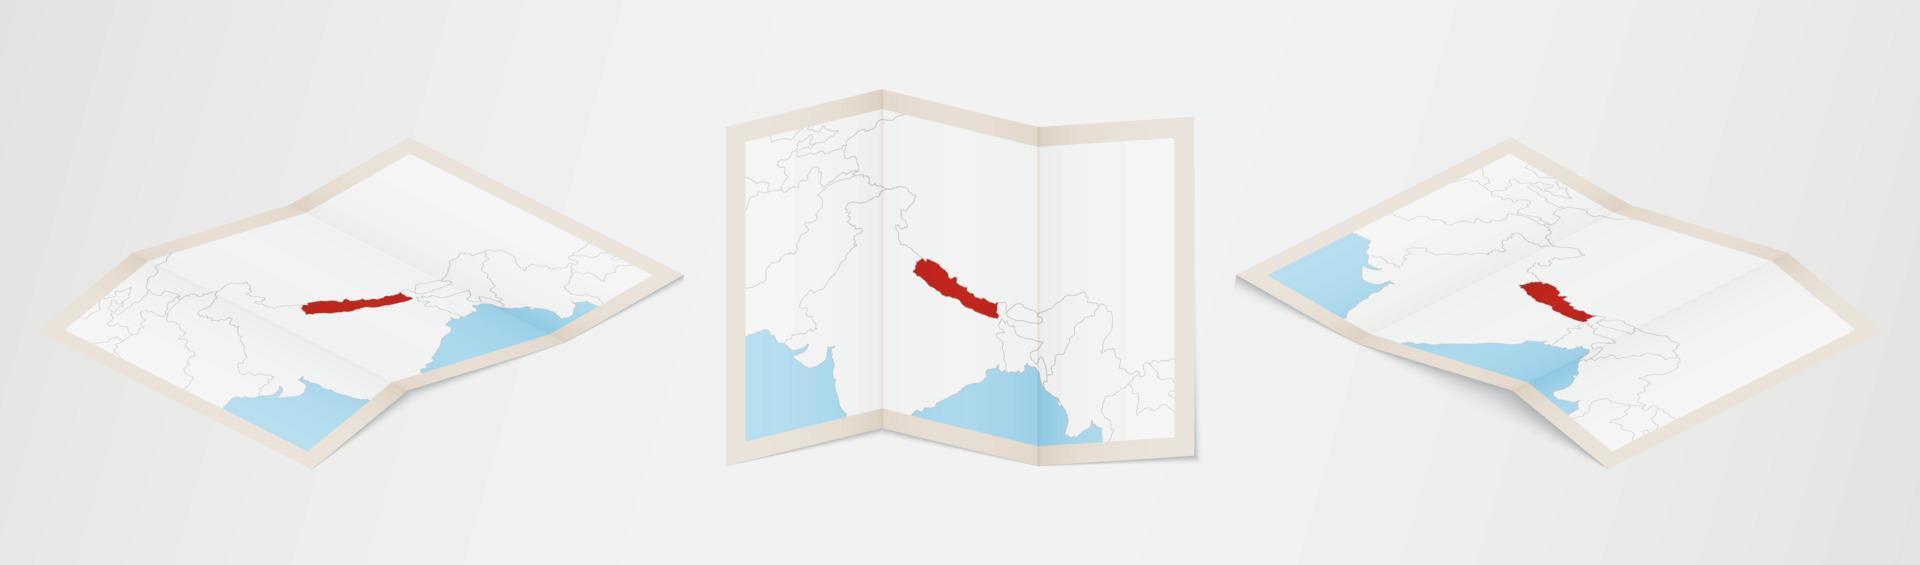 mapa dobrado do nepal em três versões diferentes. vetor